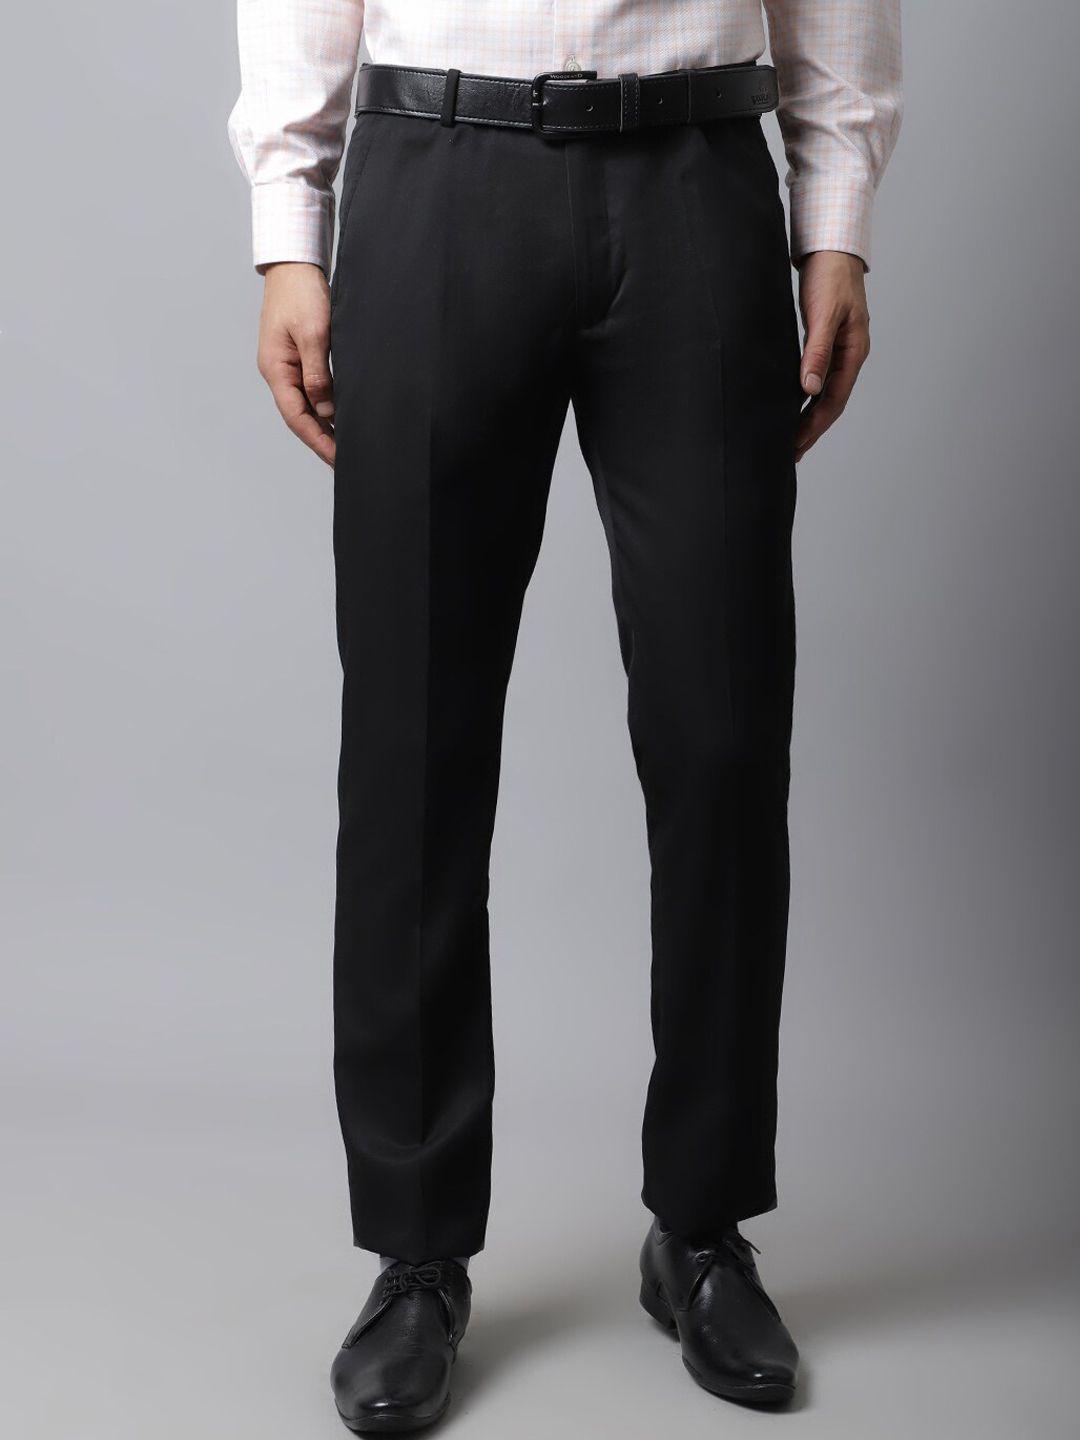 cantabil-men-black-cotton-trousers